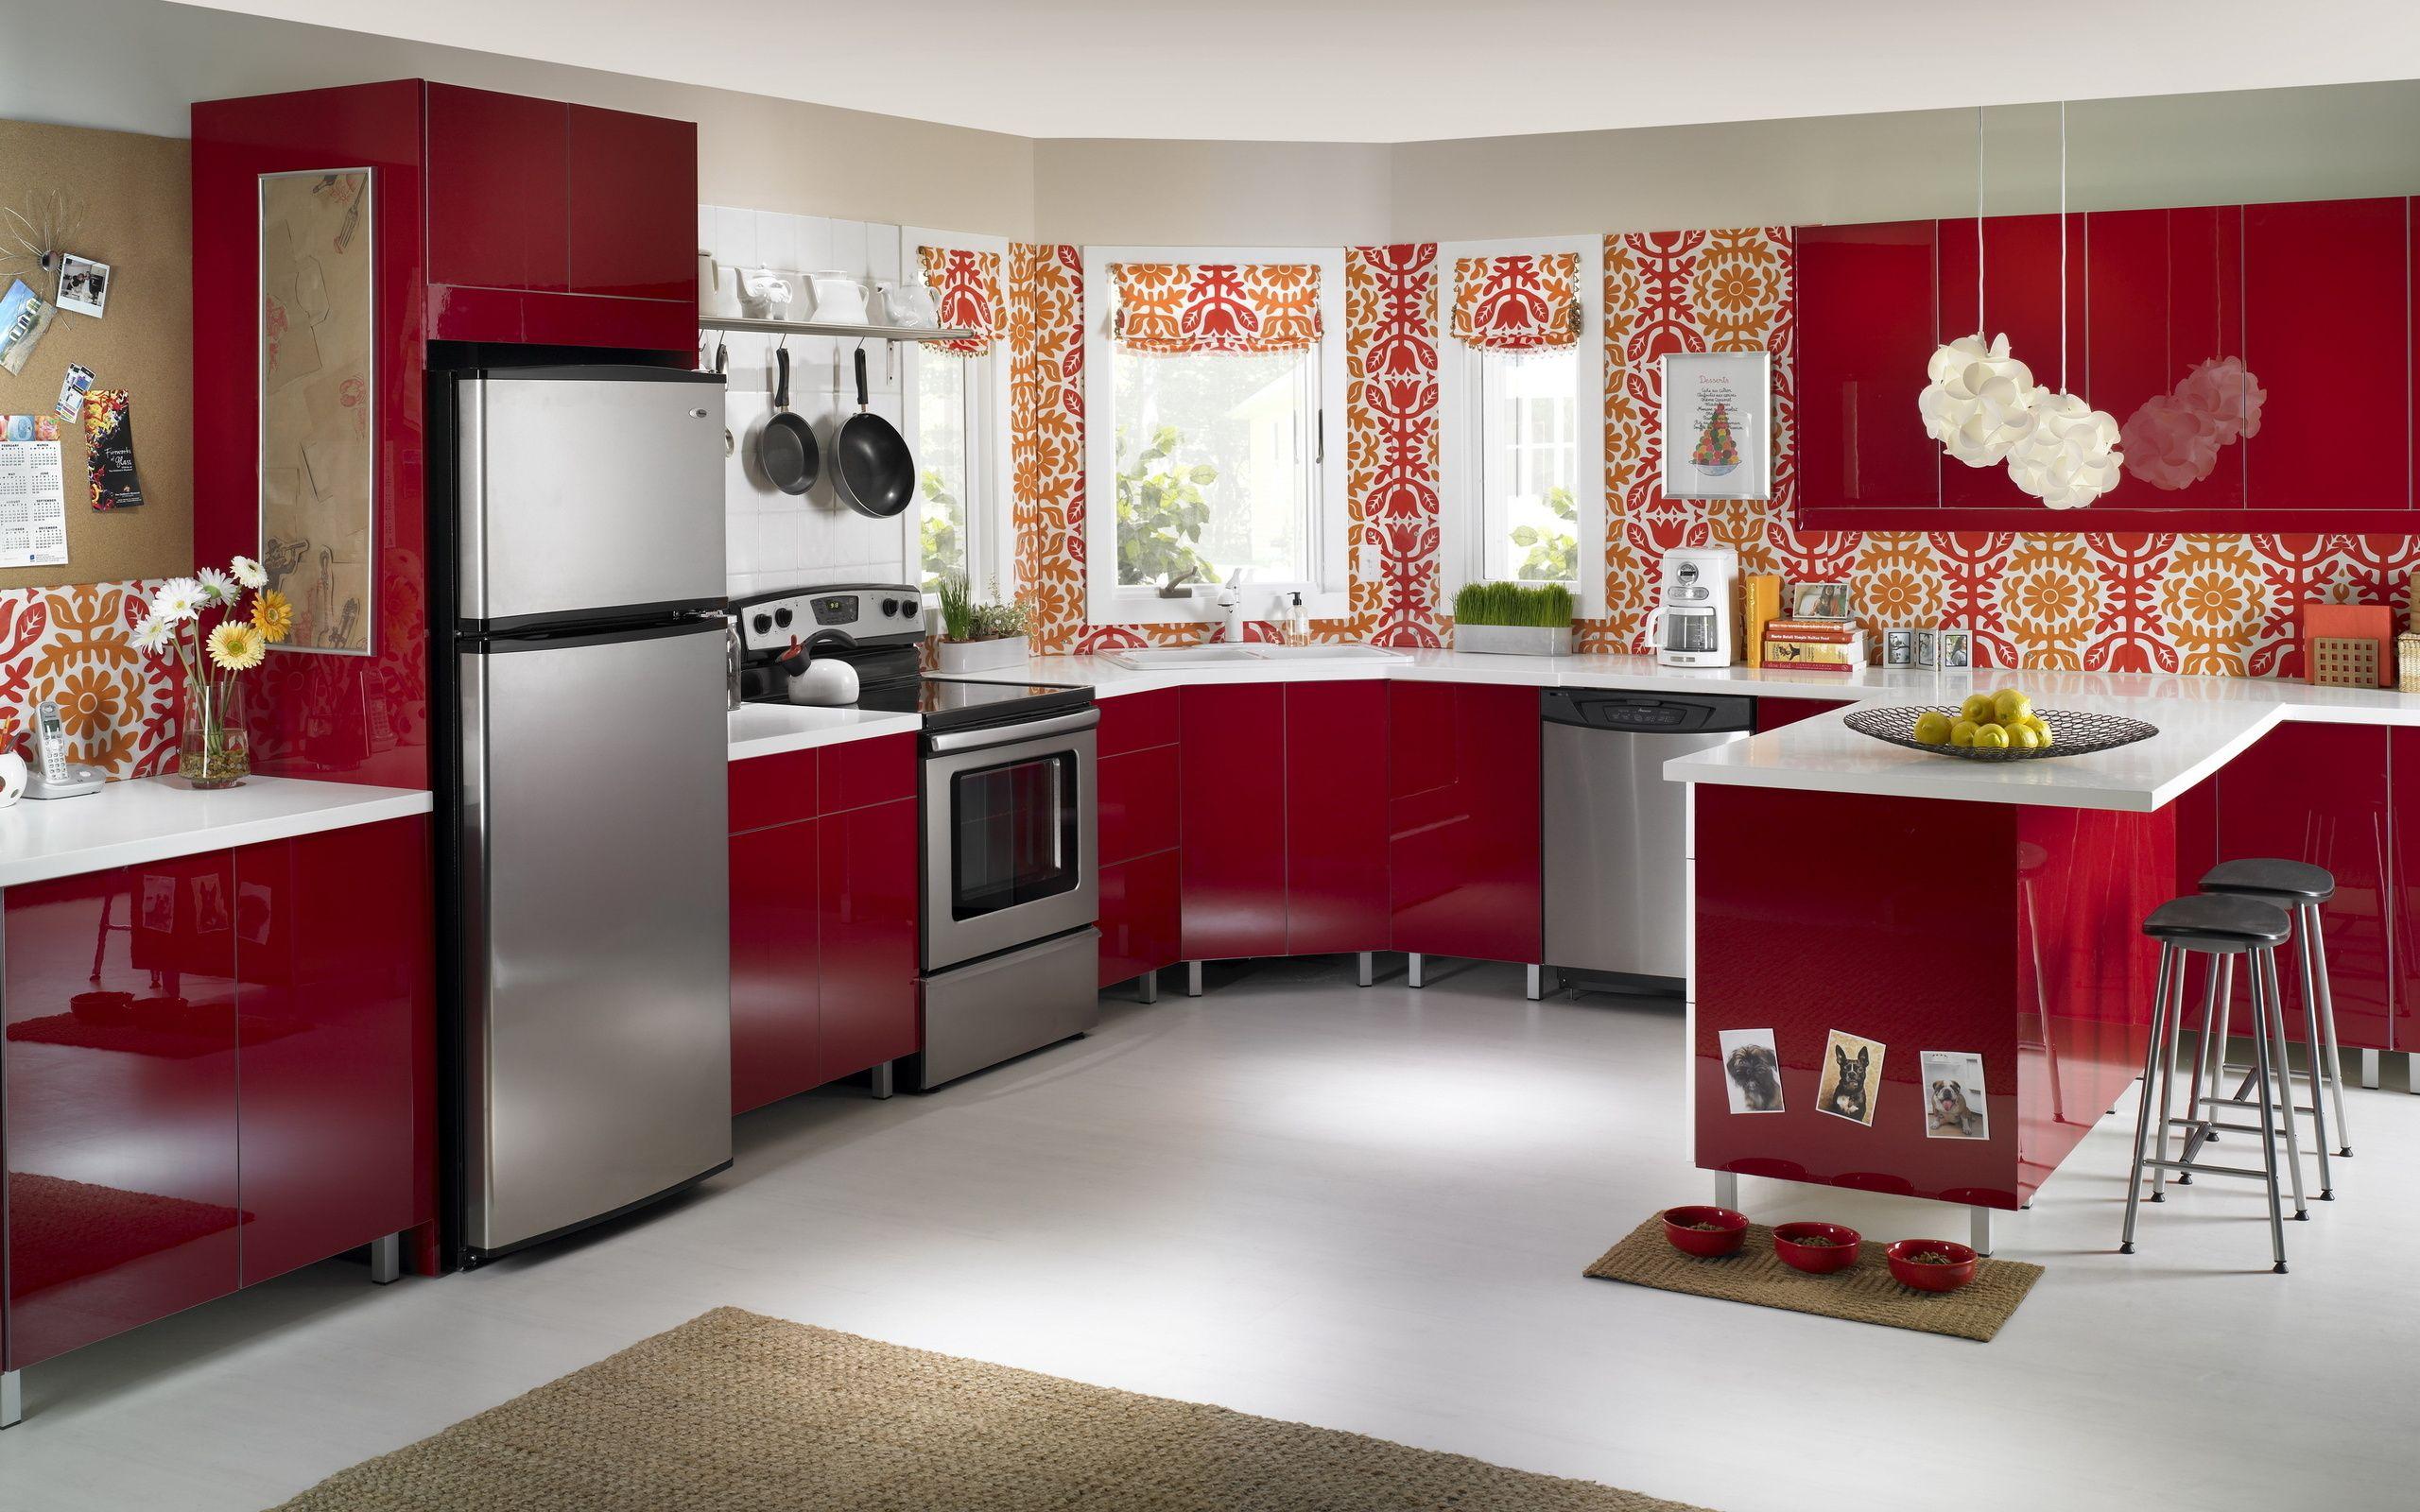 Kitchen, Interior, Style, Red, Flowers, Design, Flower